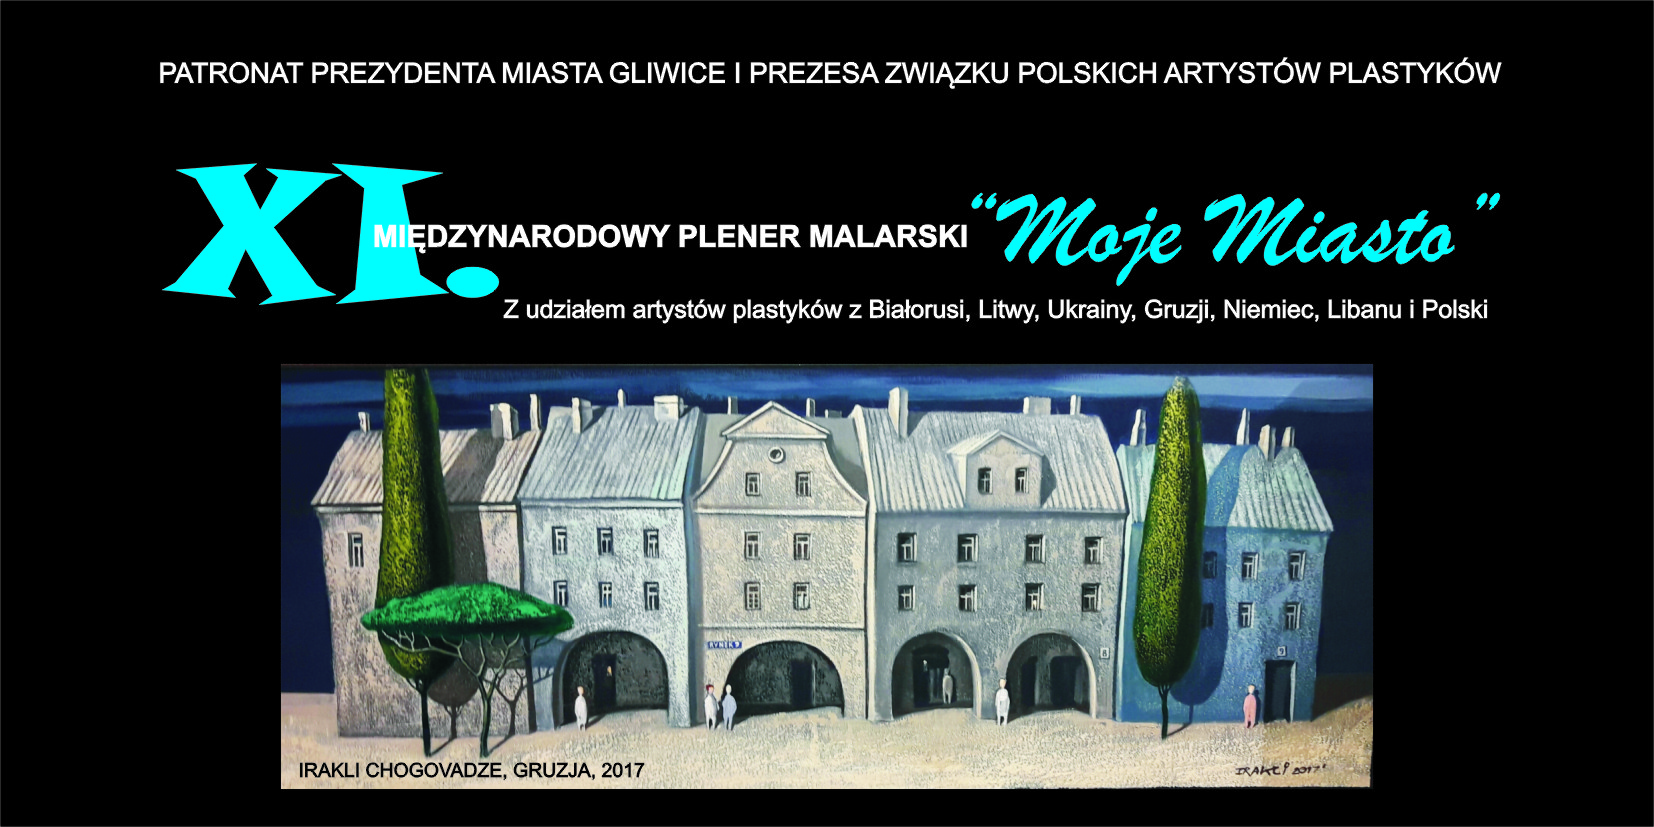 XI MPM "Moje Miasto" - Gliwice 2020, wystawa poplenerowa